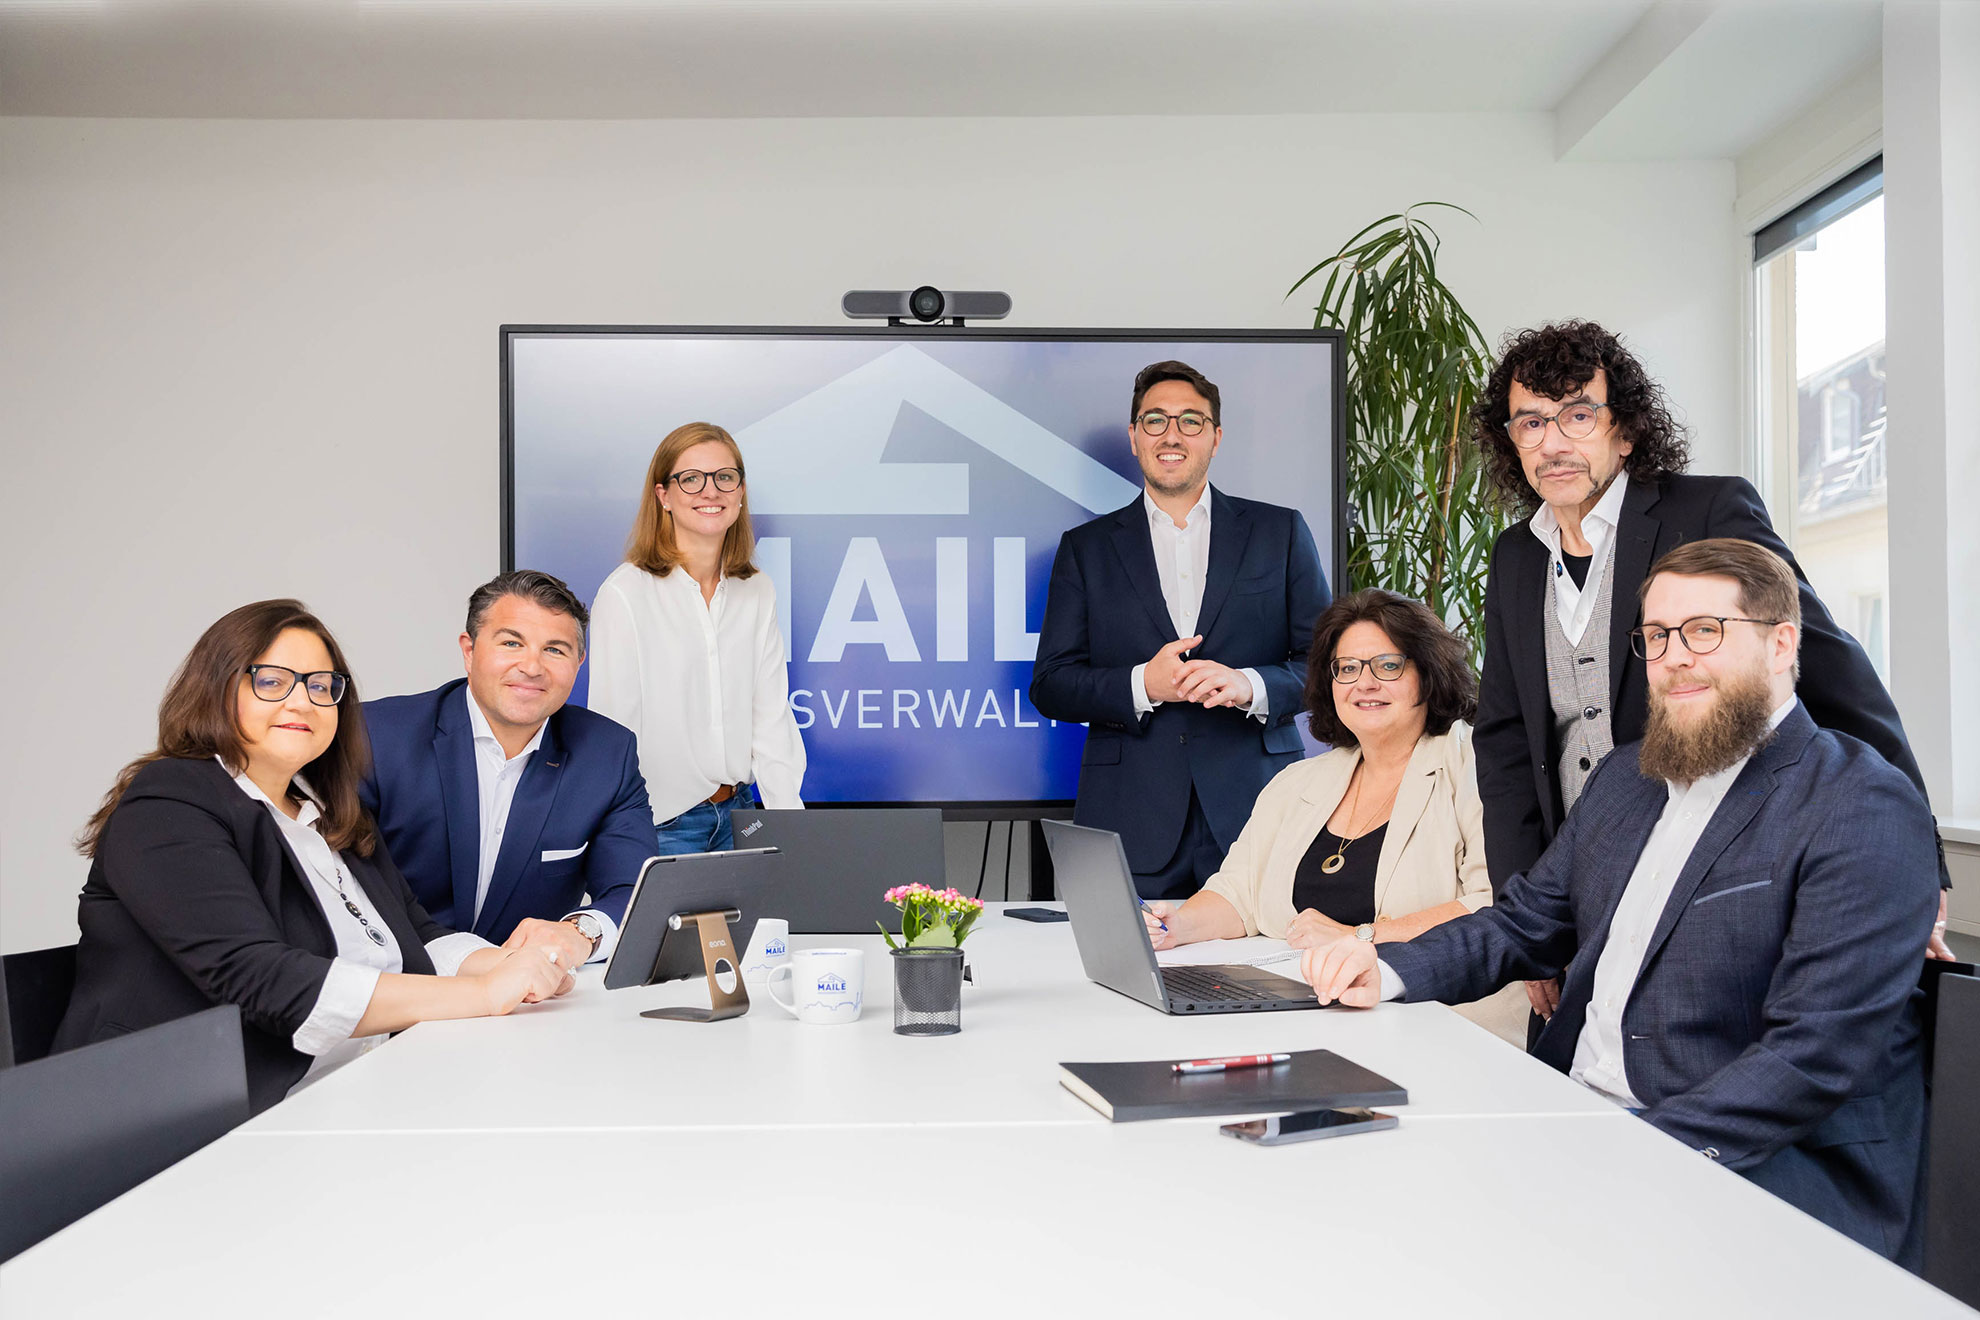 The Maile Hausverwaltung team